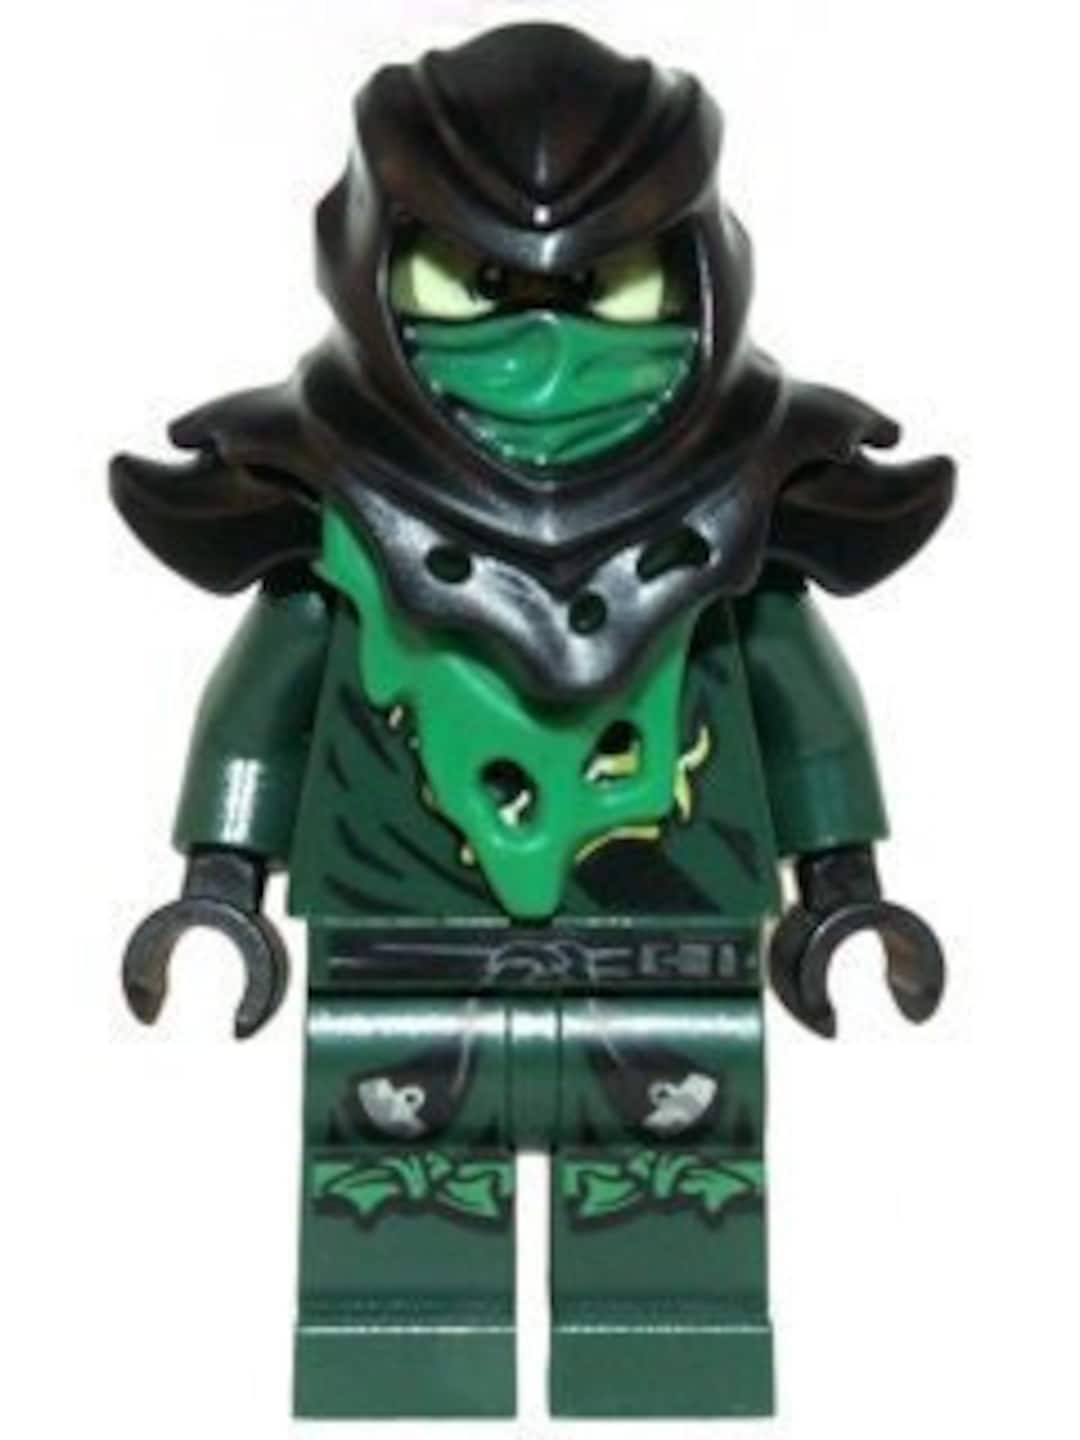 Lego MINIFIGURE Ninjago Lloyd Ghost Evil Possessed - Etsy